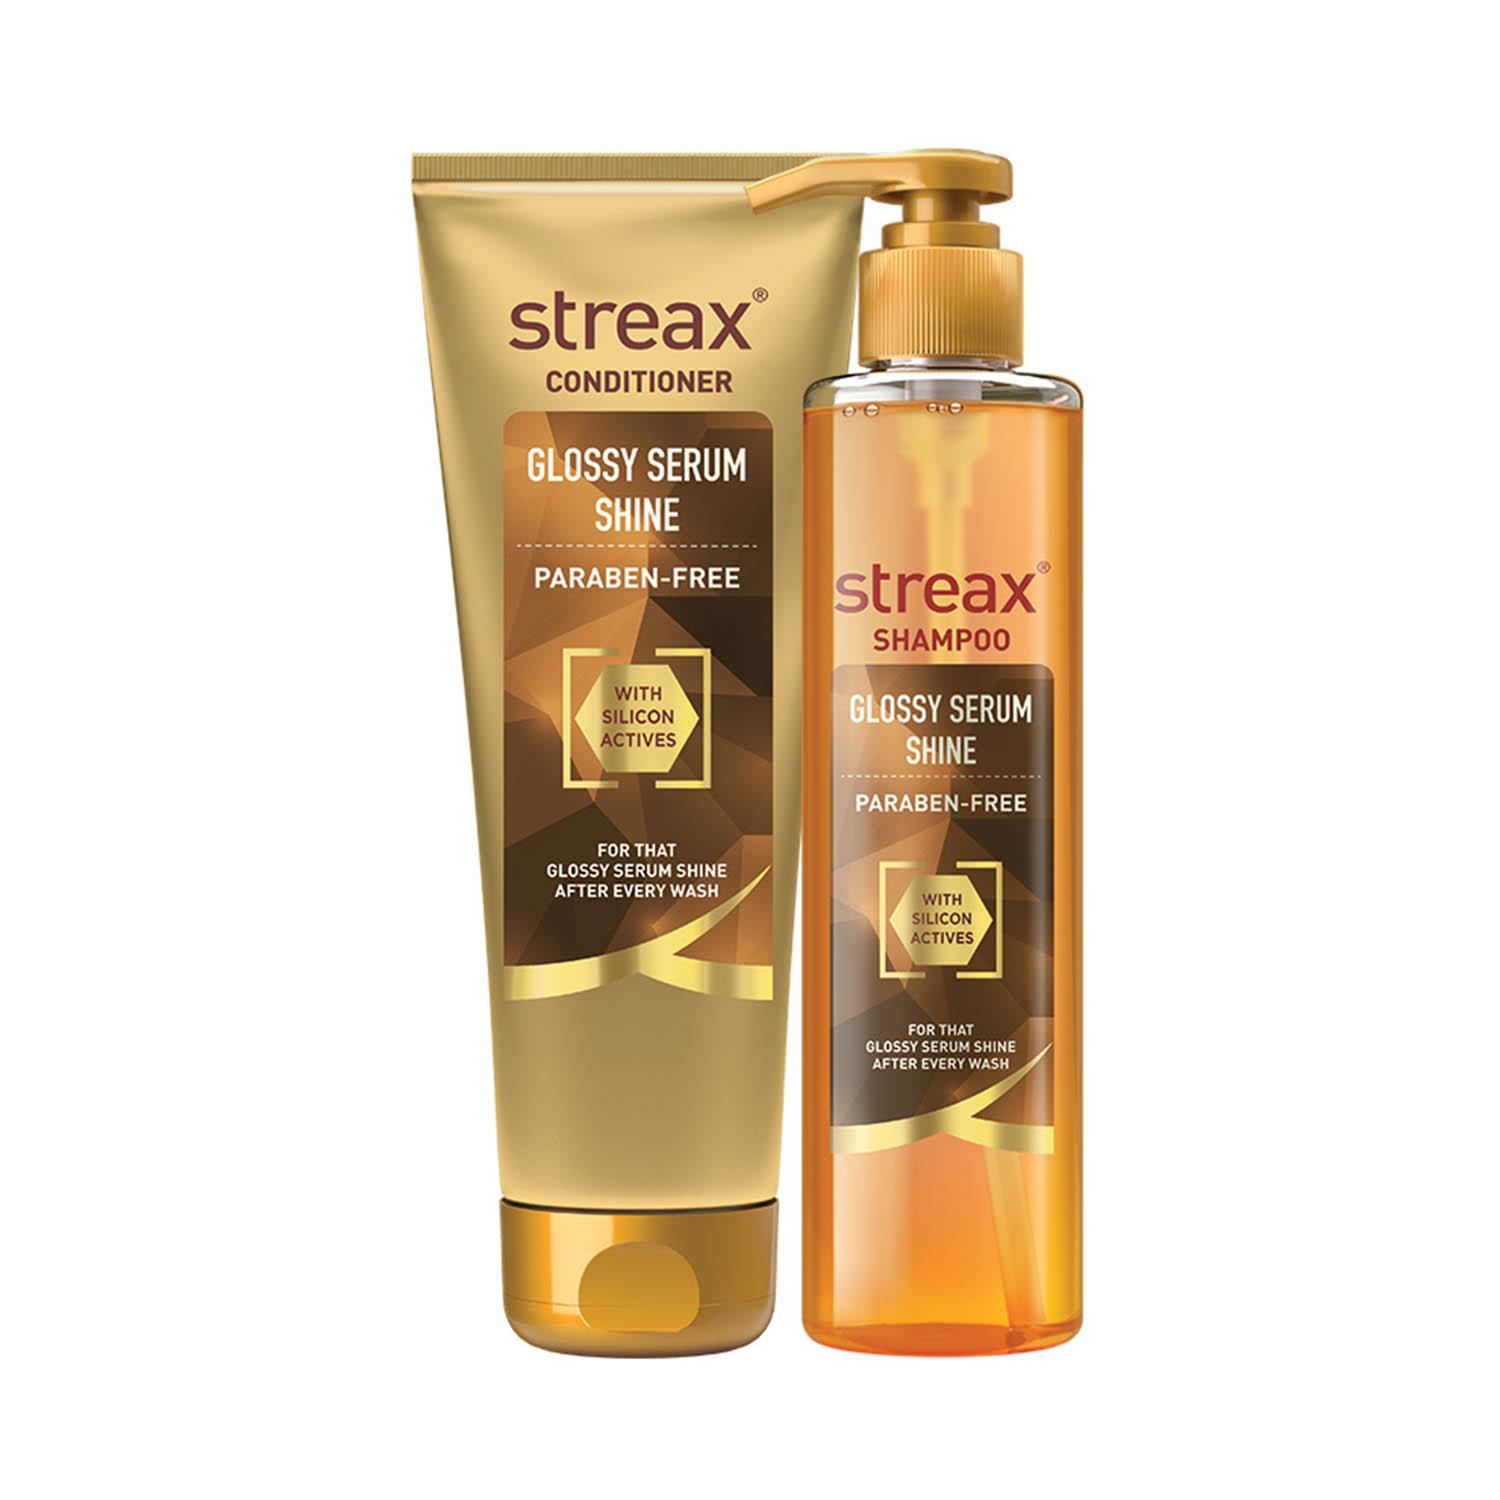 Streax | Streax Glossy Serum Shine Shampoo + Conditioner Combo